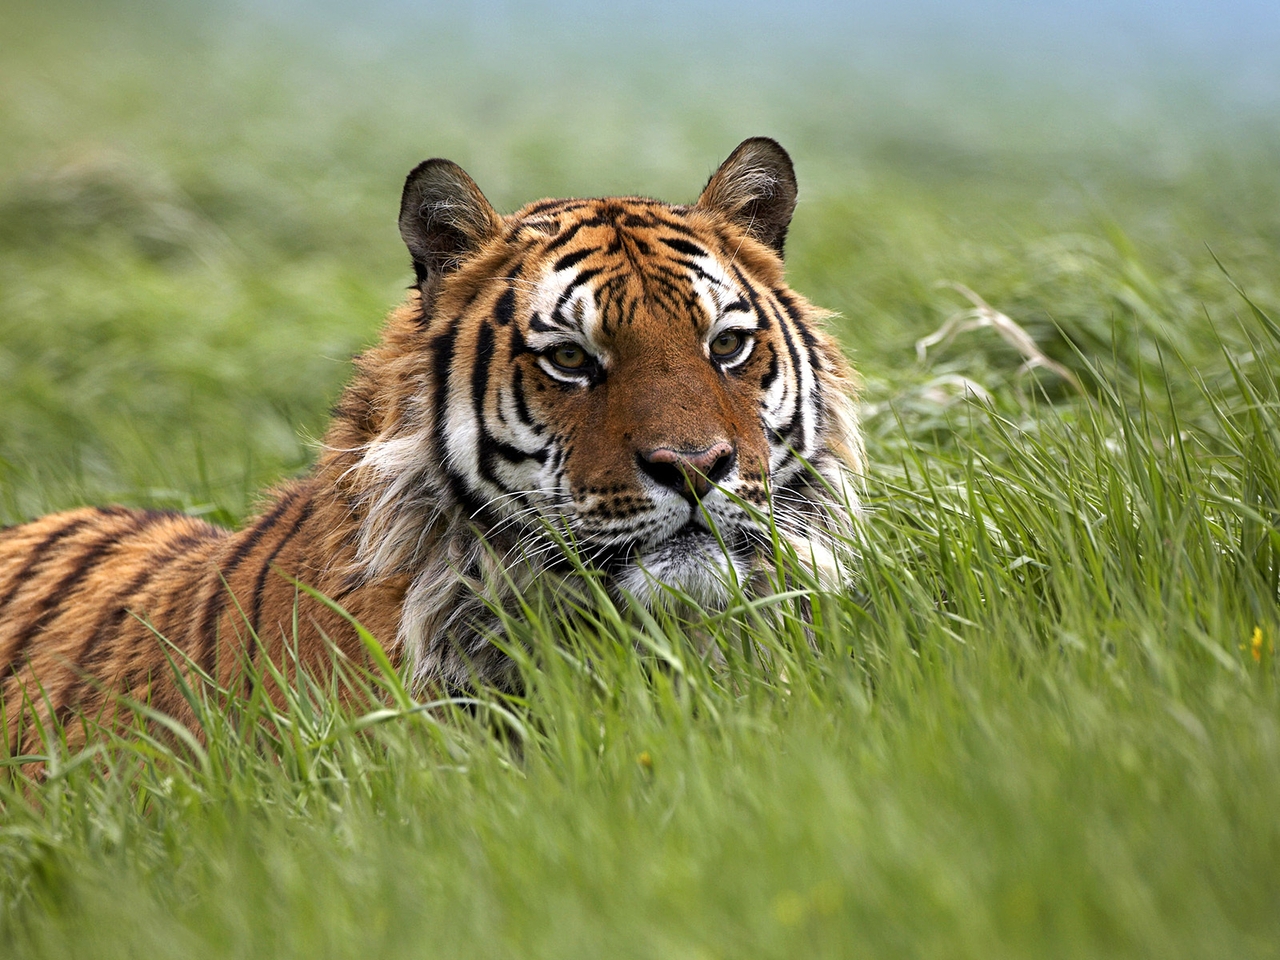 Image: tiger, grass, lies, summer